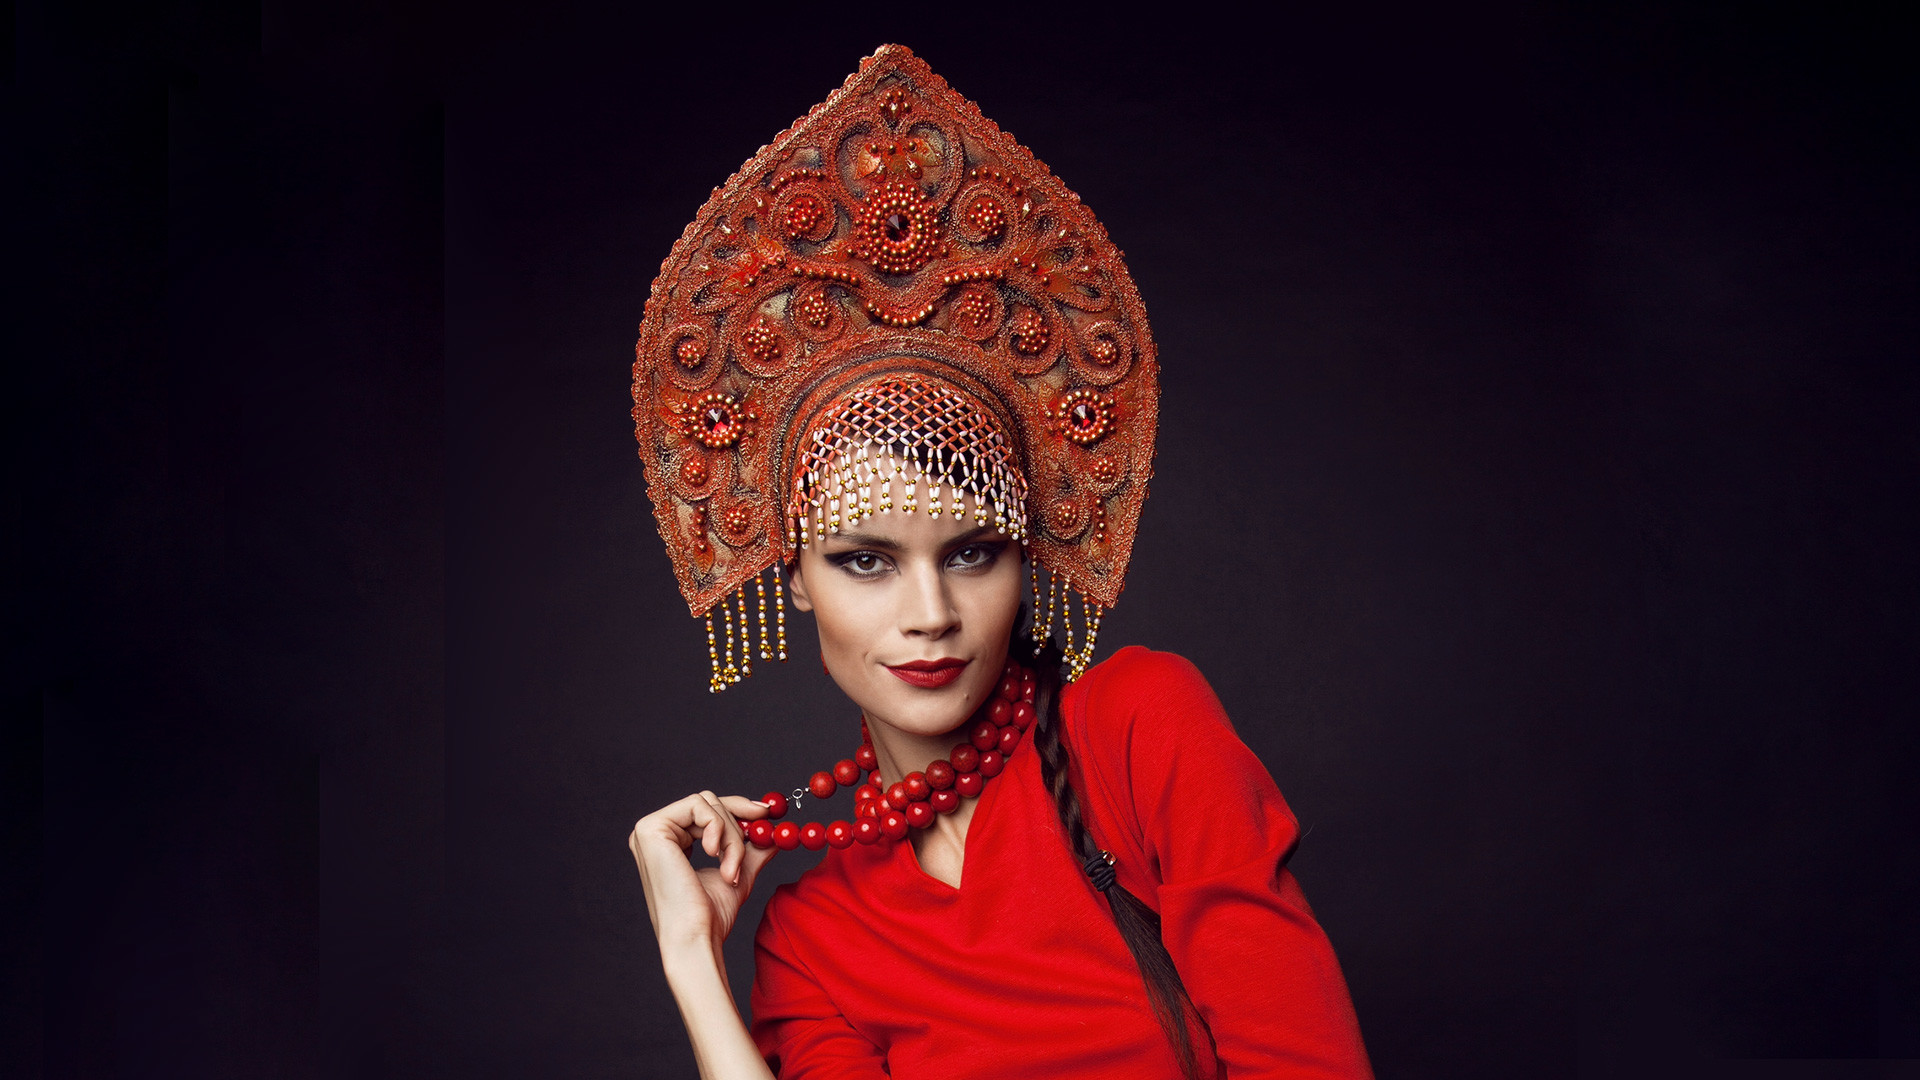 ココシニク ロシアの頭飾りをめぐる8つの事実 ロシア ビヨンド